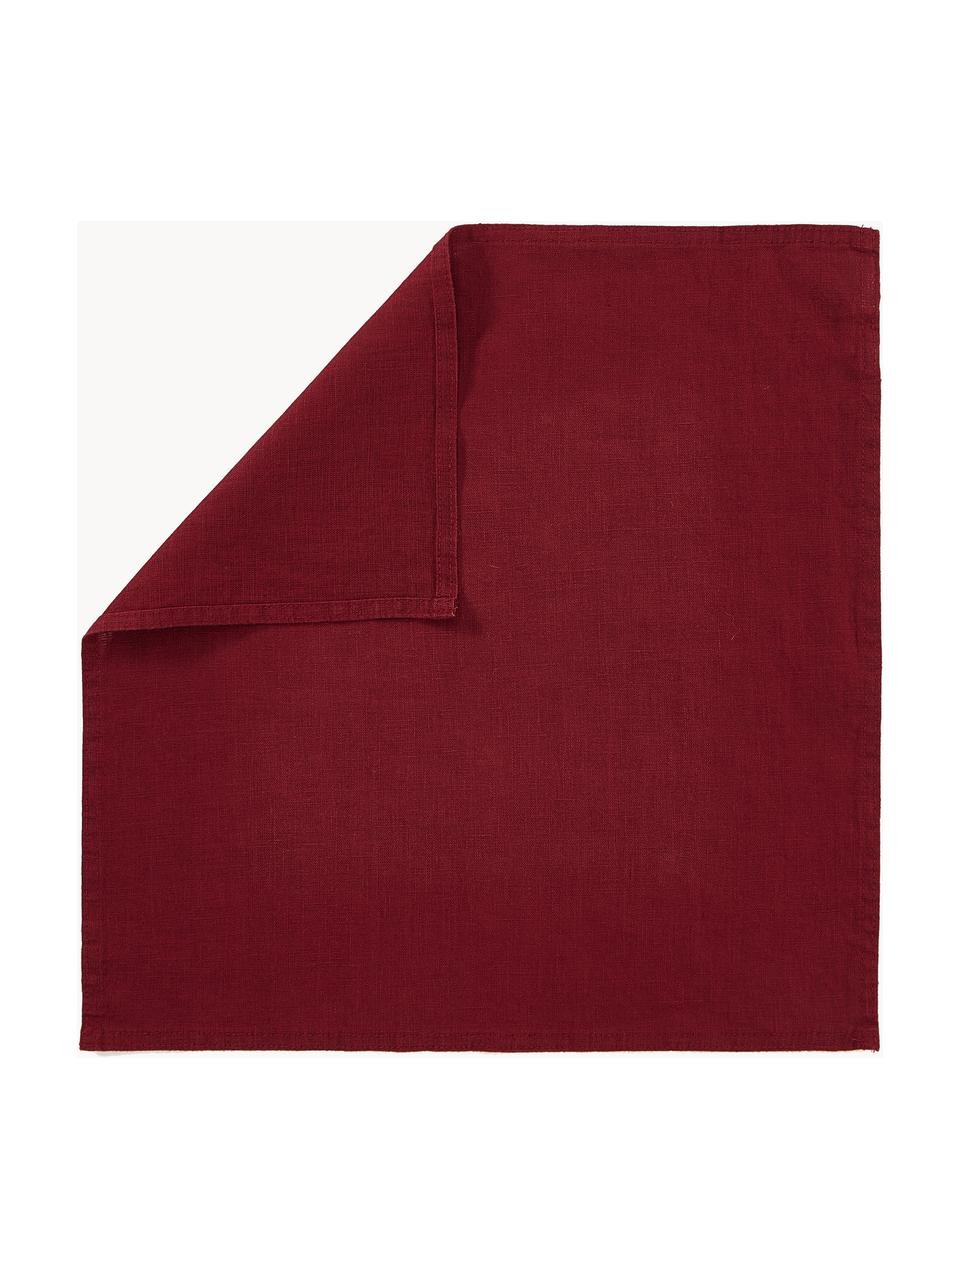 Serviettes en lin Pembroke, 2 pièces, 100 % pur lin, Rouge, larg. 42 x long. 42 cm